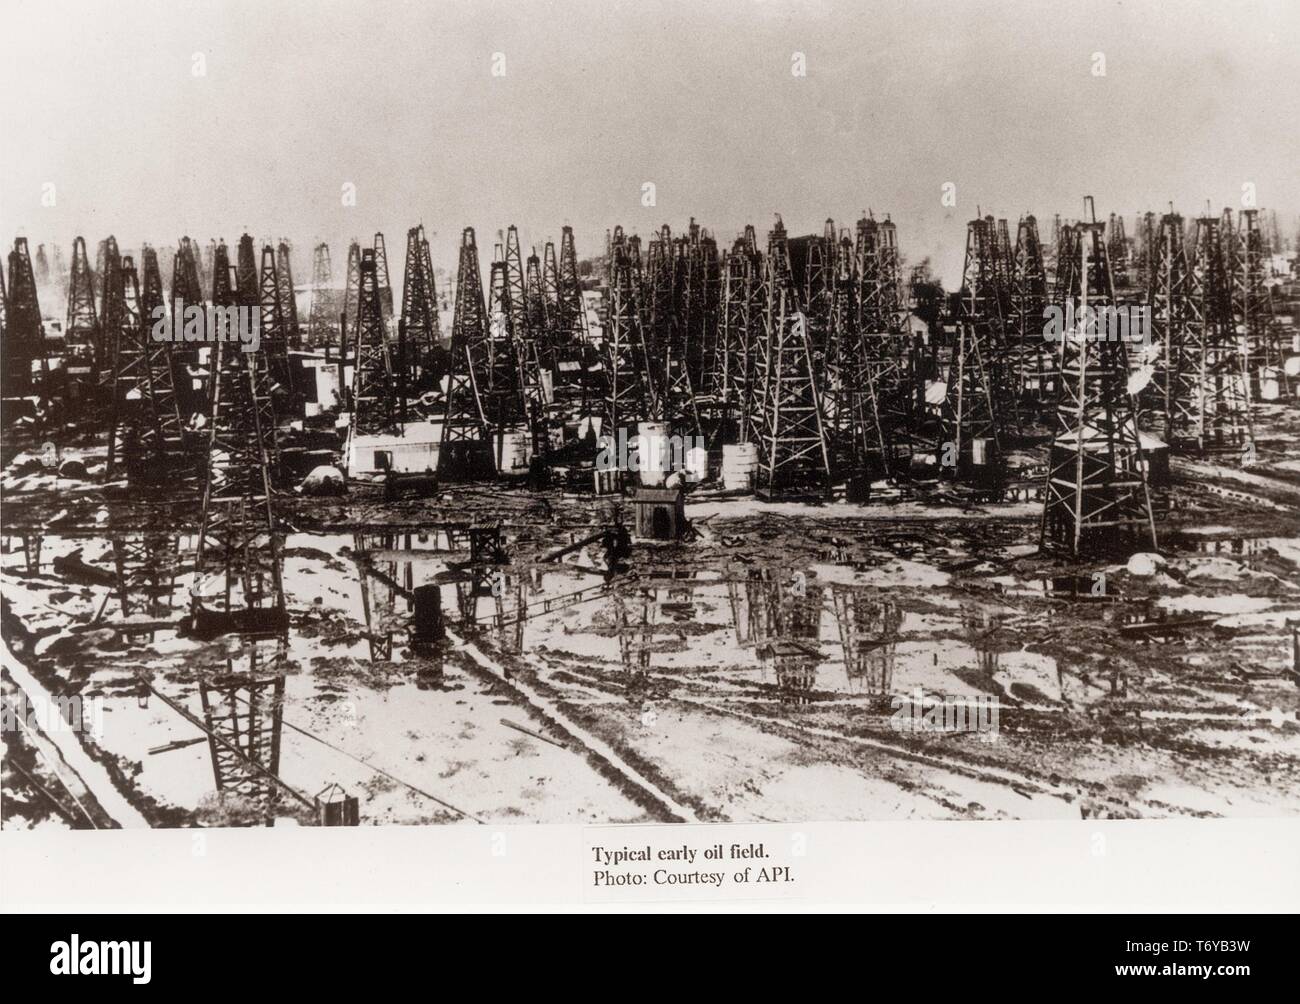 Hoher winkel Landschaft geschossen von derrickkräne und Gebäude dicht aneinander auf einer frühen Ölfeld, 1900. Bild mit freundlicher Genehmigung vom American Petroleum Institute/US Department of Energy. () Stockfoto